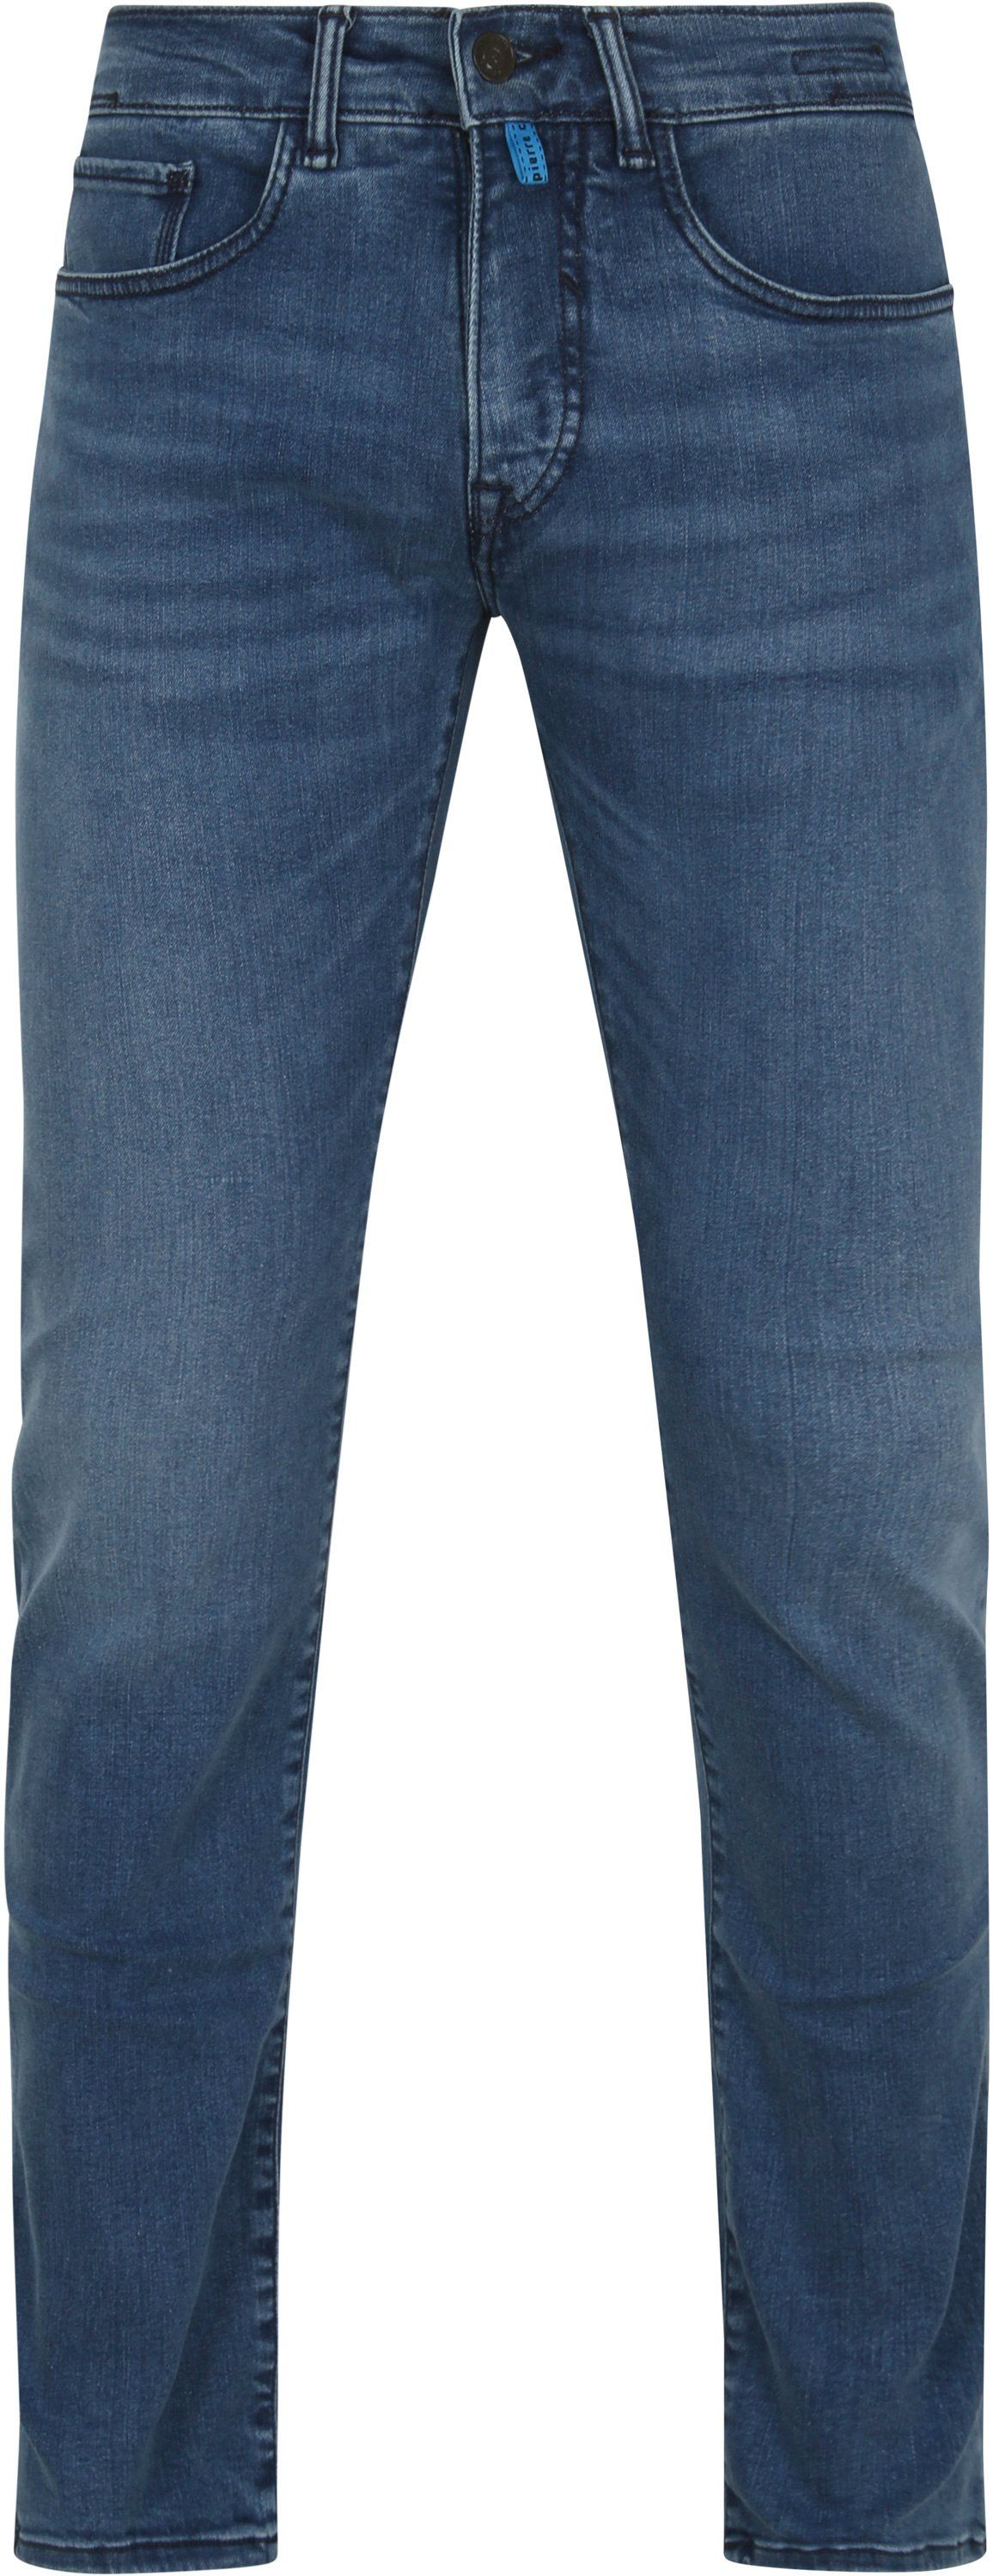 Pierre Cardin 5 Pocket Pants Antibes Blue size W 31